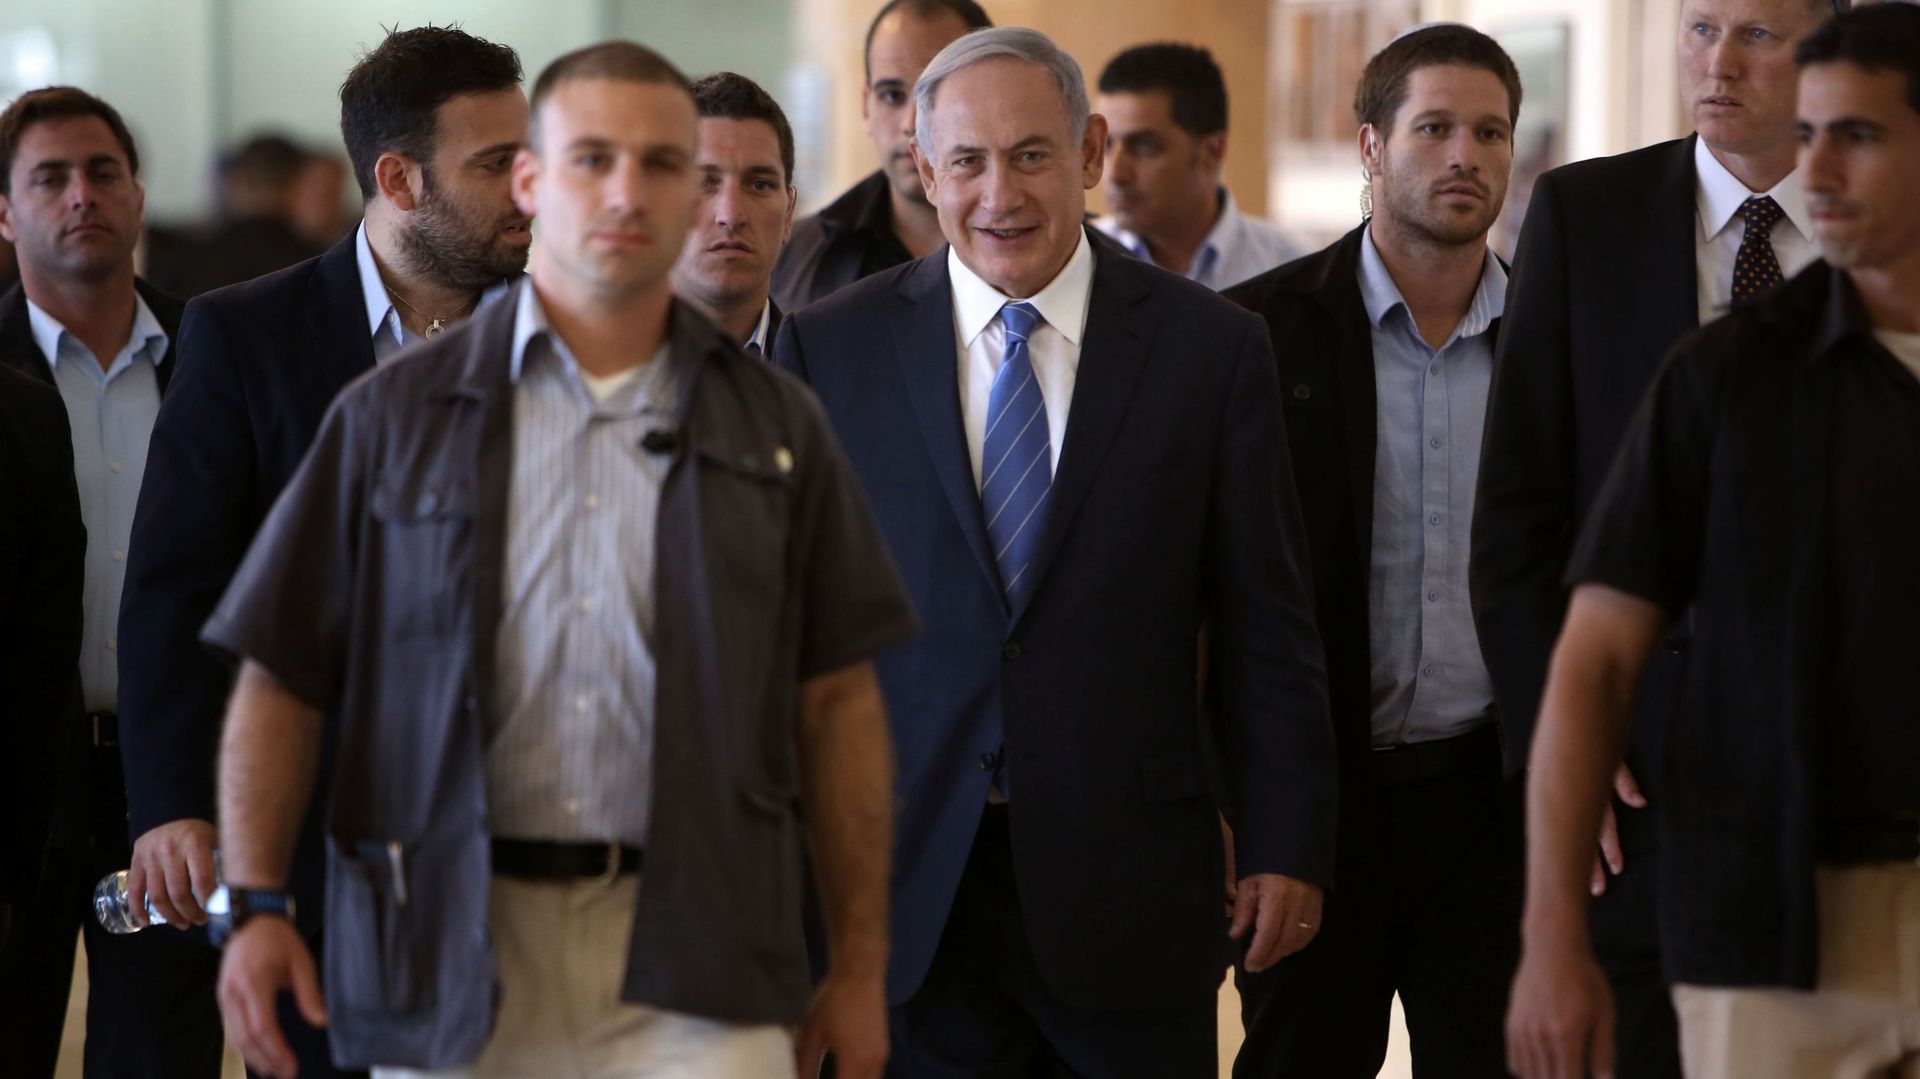 la-securite-de-netanyahu-veut-faire-deshabiller-un-photographe-la-presse-s-indigne